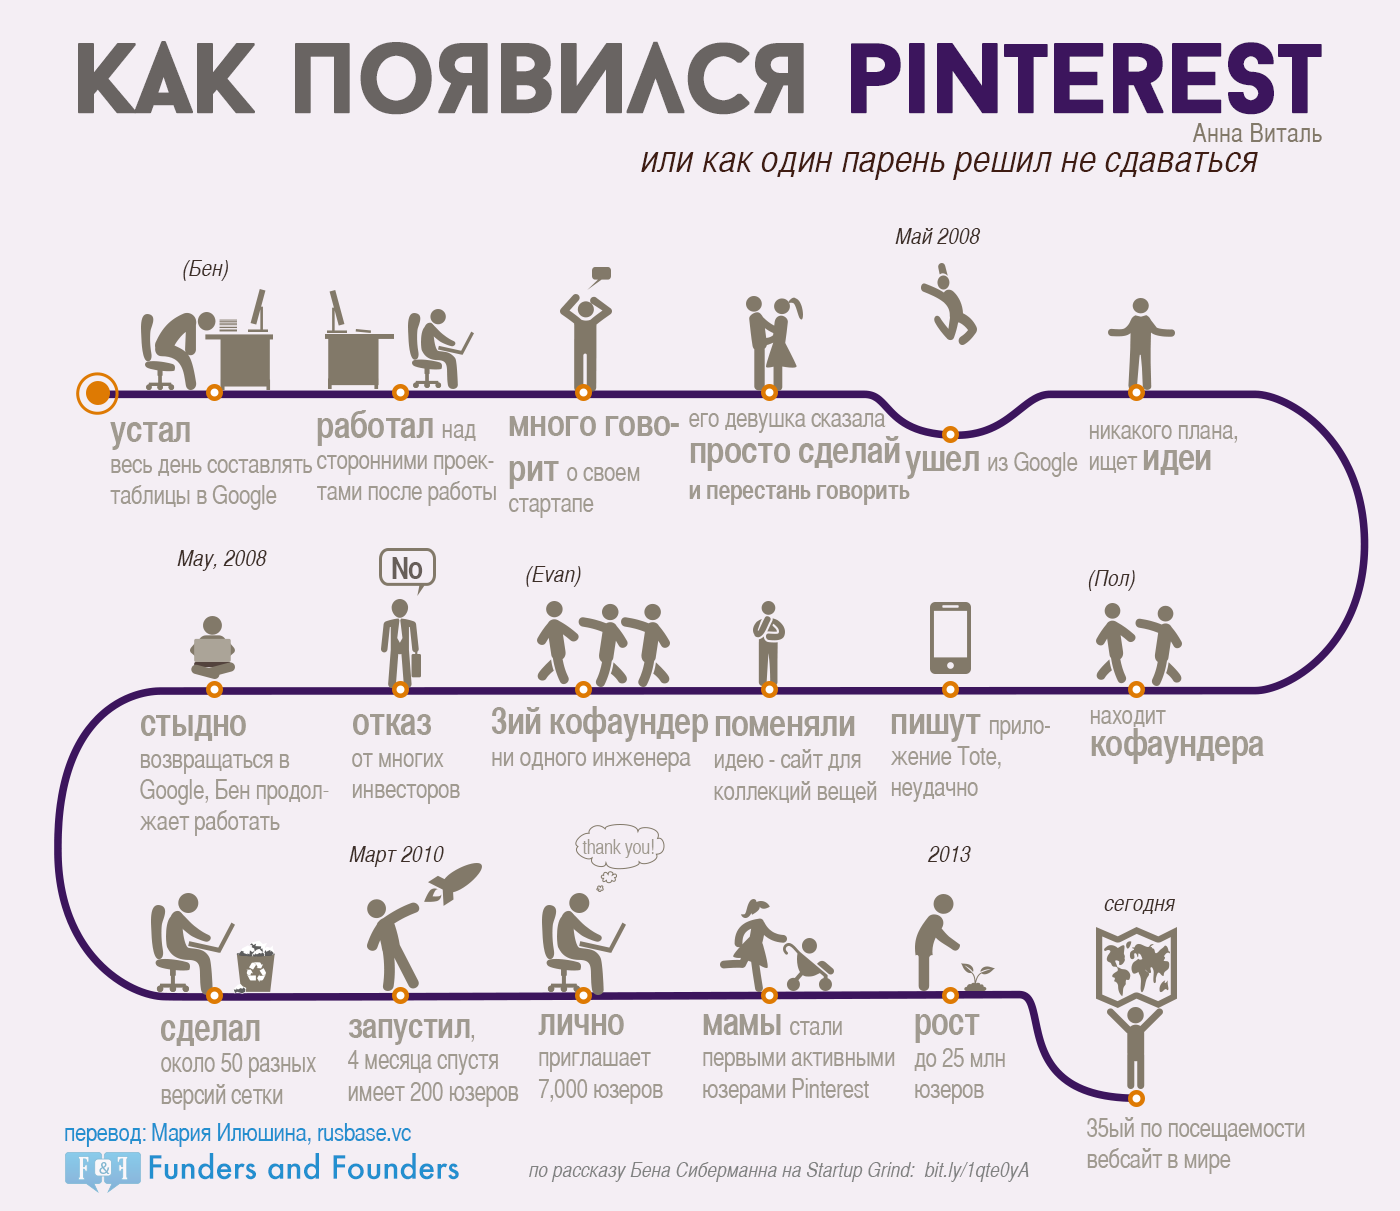 Как появился Pinterest - инфографика